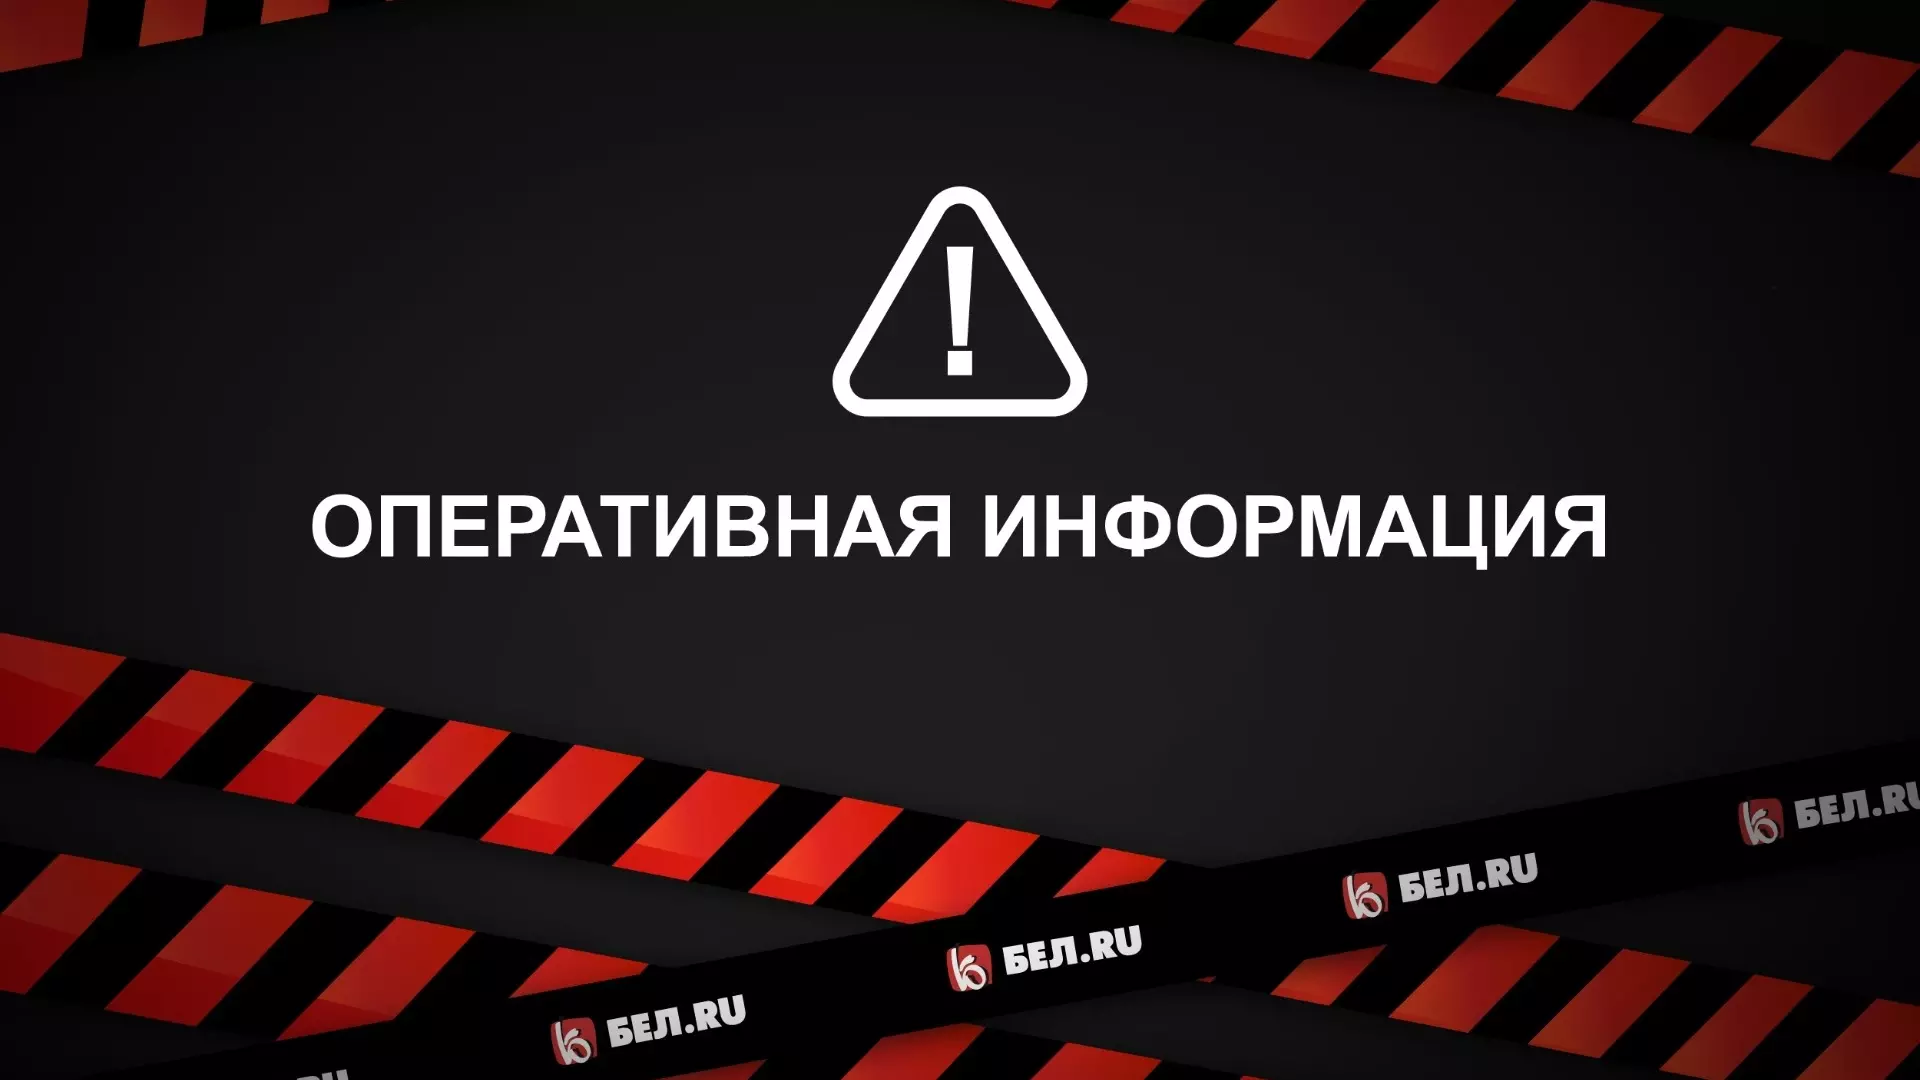 Ракетную опасность на три минуты объявили в Белгороде в предпраздничный день